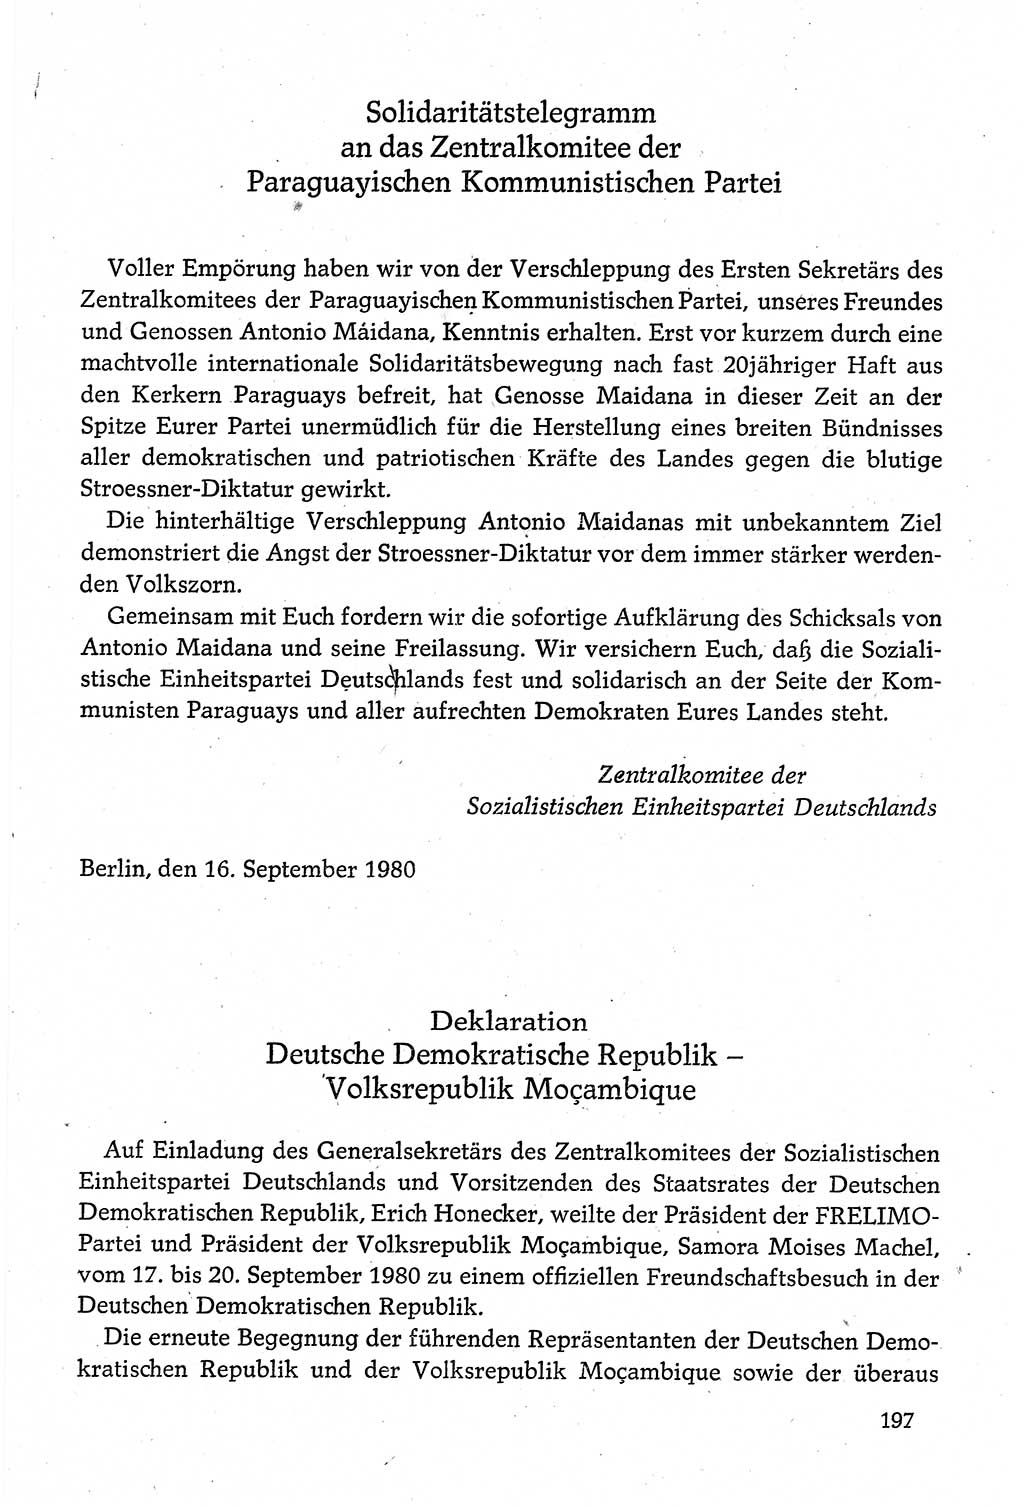 Dokumente der Sozialistischen Einheitspartei Deutschlands (SED) [Deutsche Demokratische Republik (DDR)] 1980-1981, Seite 197 (Dok. SED DDR 1980-1981, S. 197)